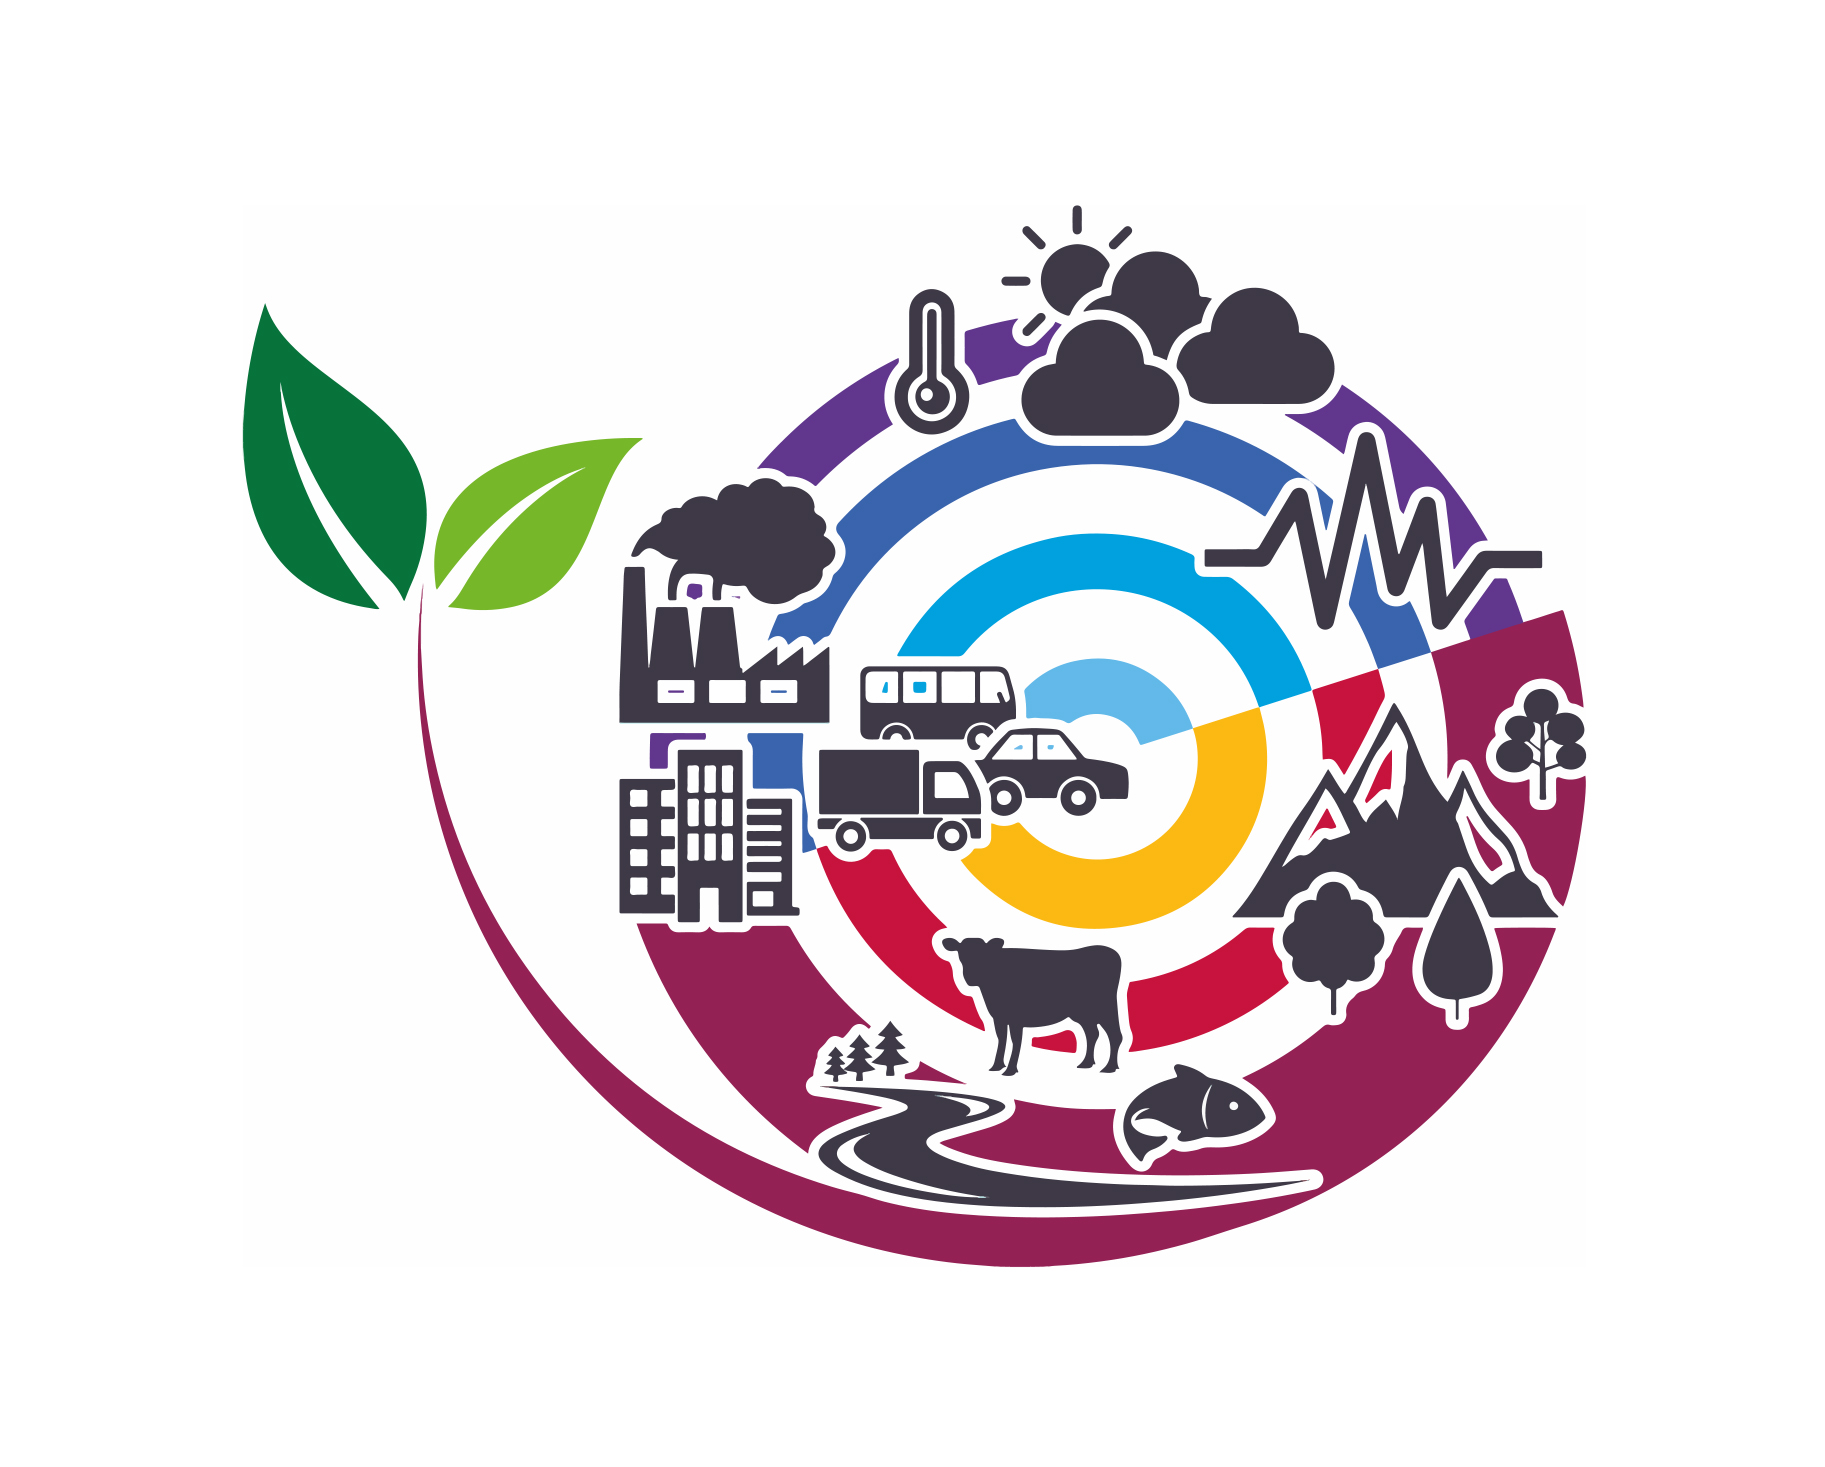 Fomento y Medio Ambiente organiza la jornada ‘Urbanismo y Cambio Climático' para debatir las herramientas para un desarrollo sostenible